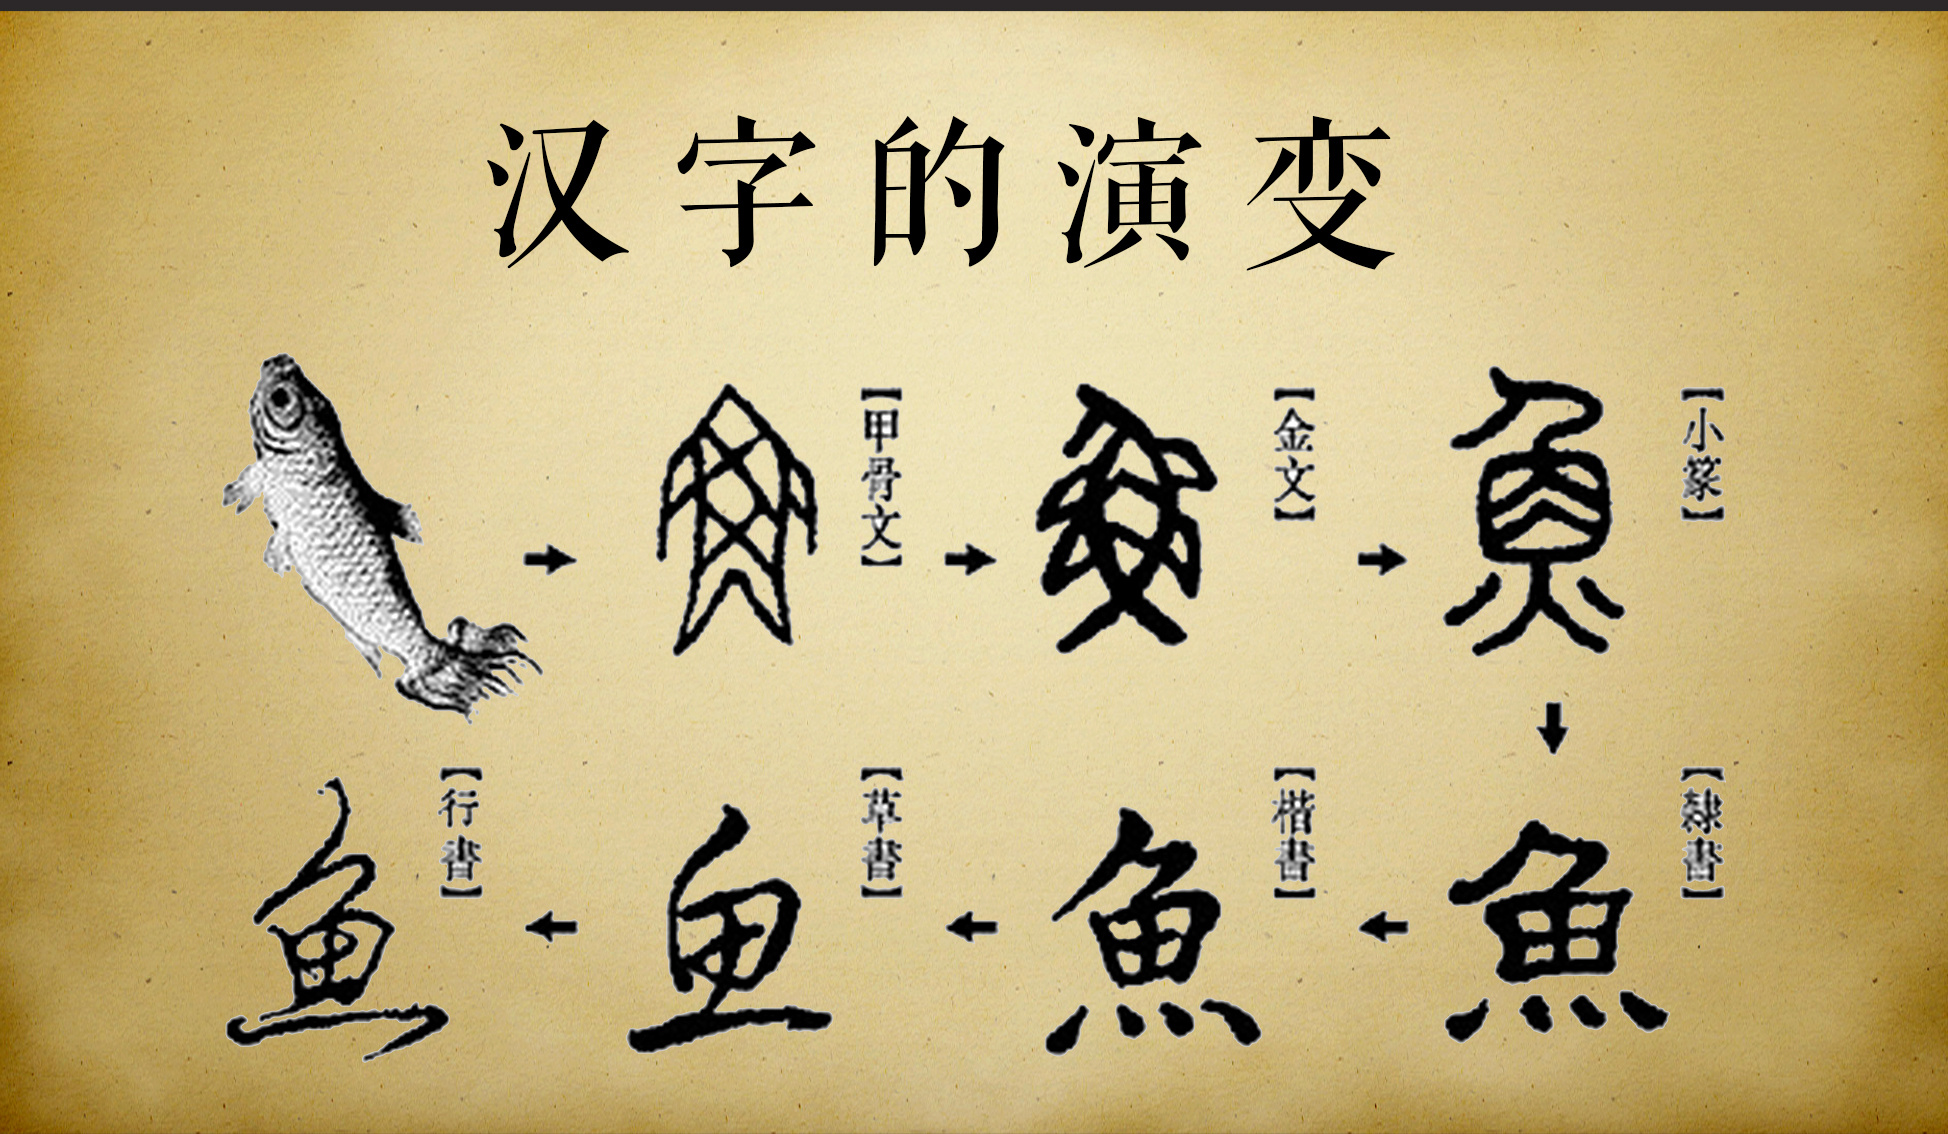 汉字的演变过程汉字的起源汉字的形体发展汉字演变的意义